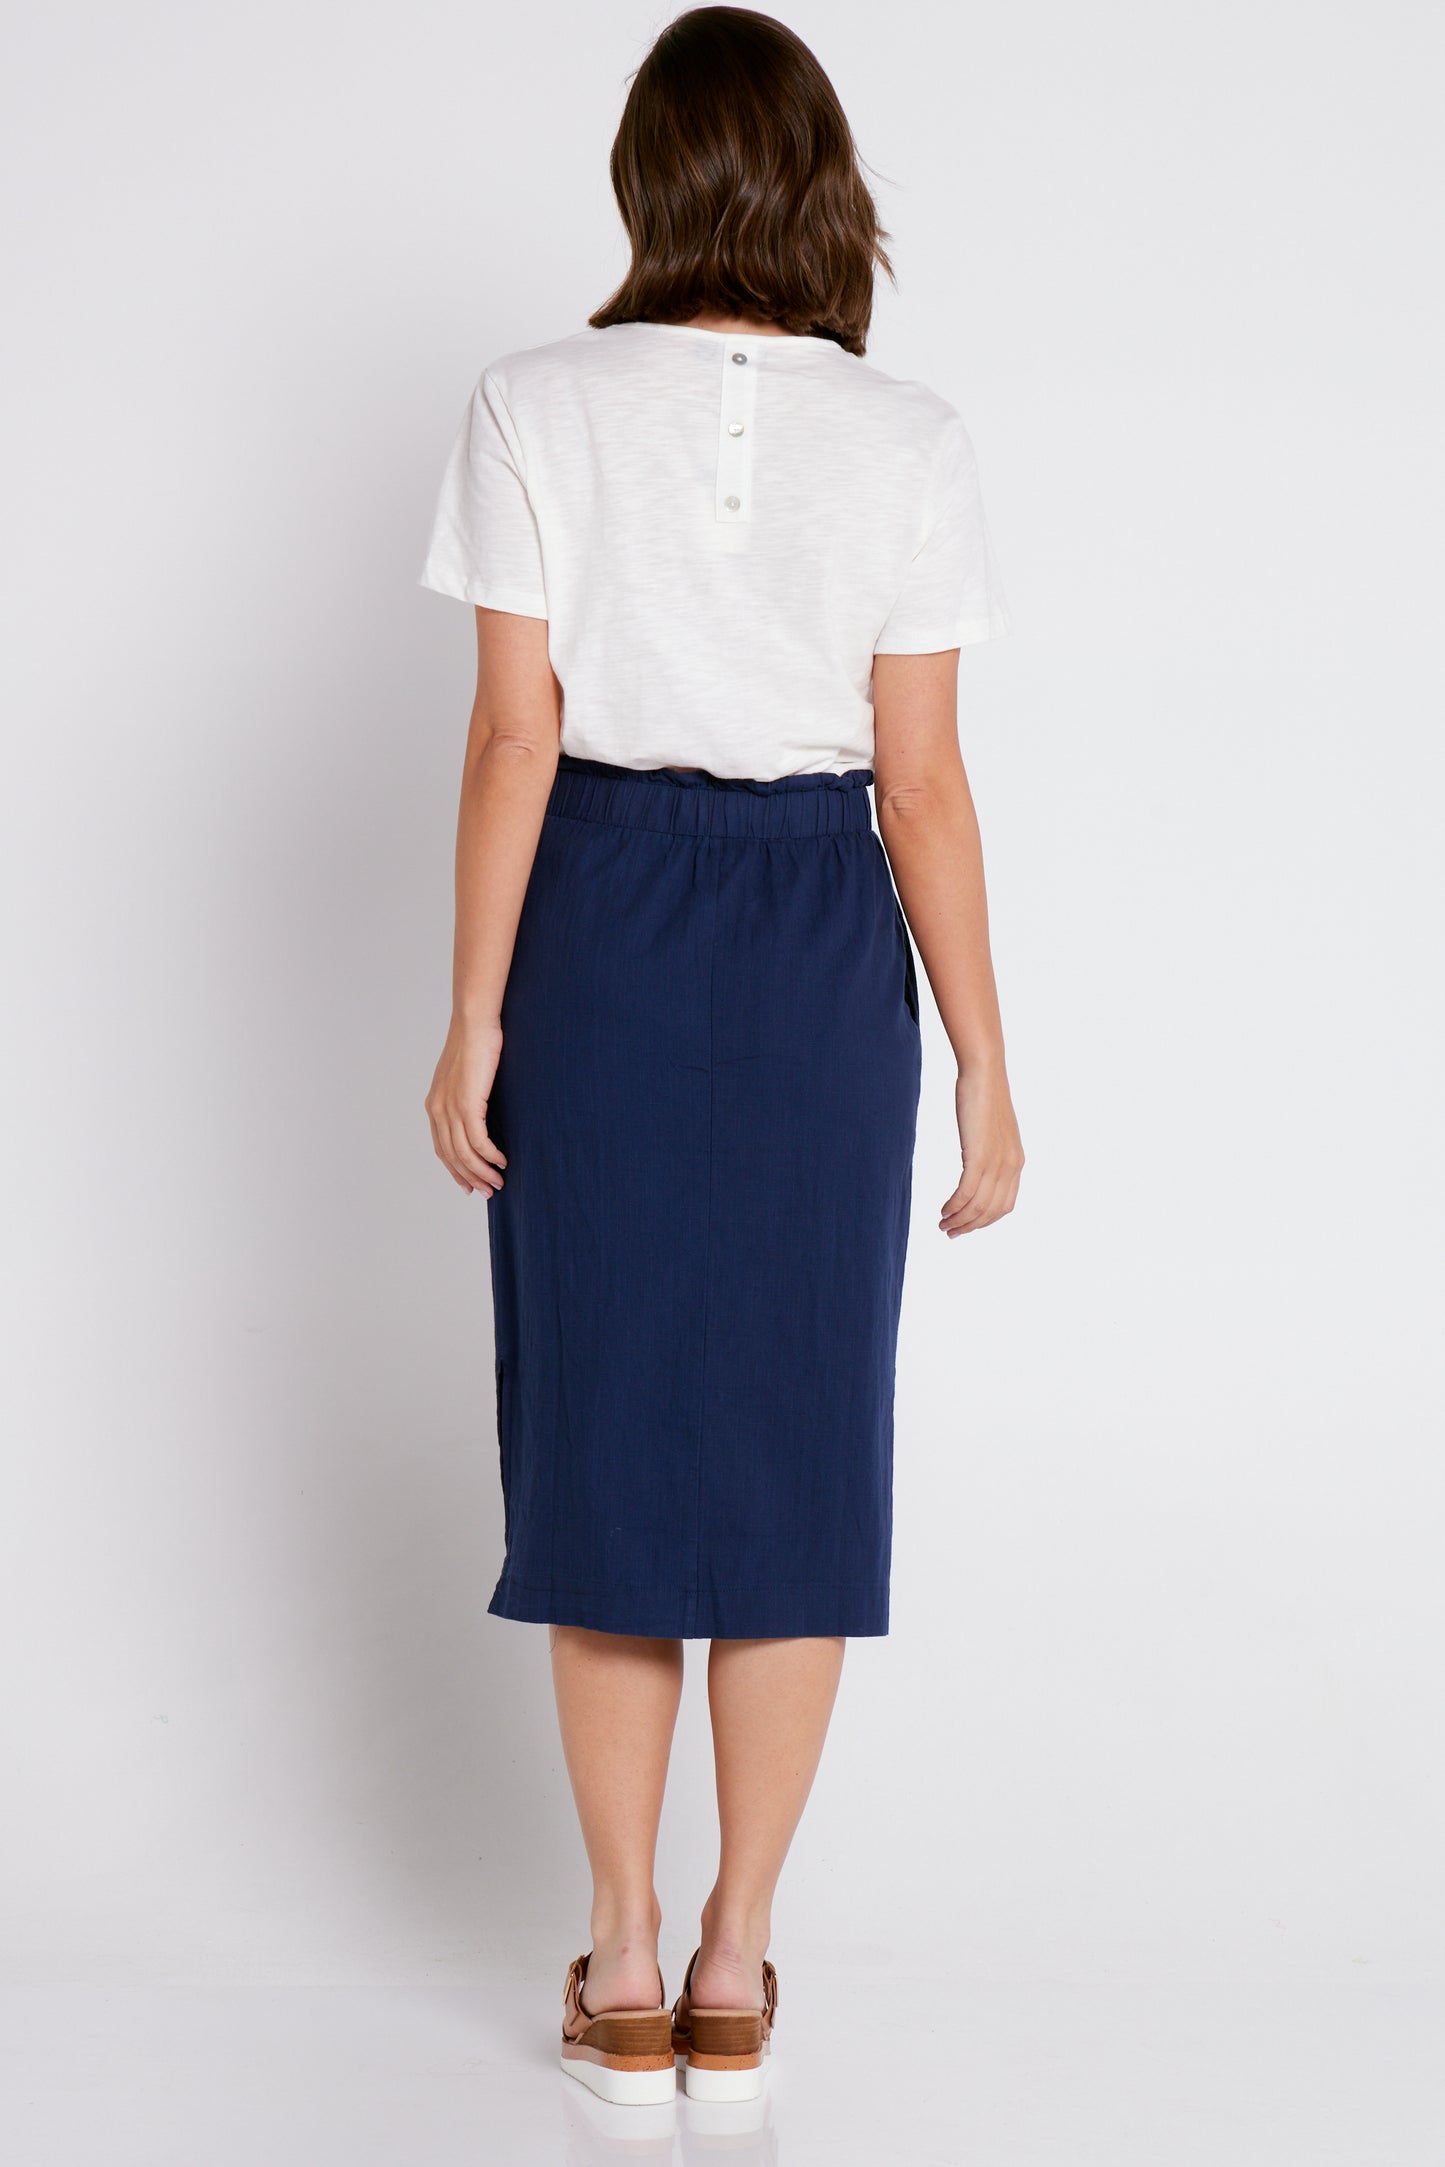 Emily Linen Skirt - Navy